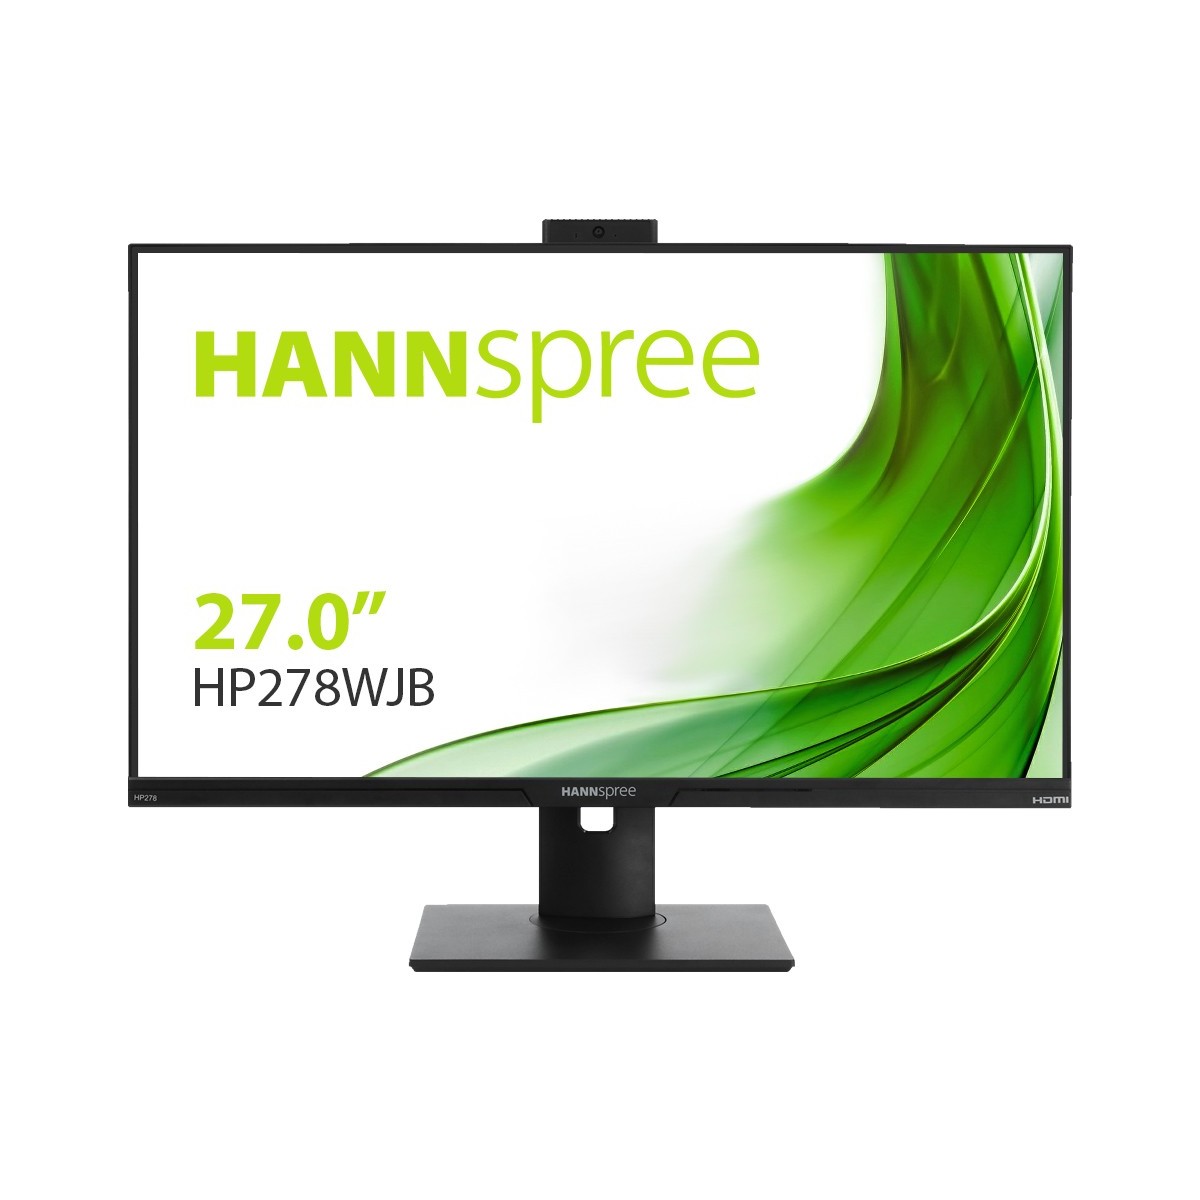 Hannspree HP278WJB 27IN 1920X1080 16:9 - Flat Screen - 5 ms